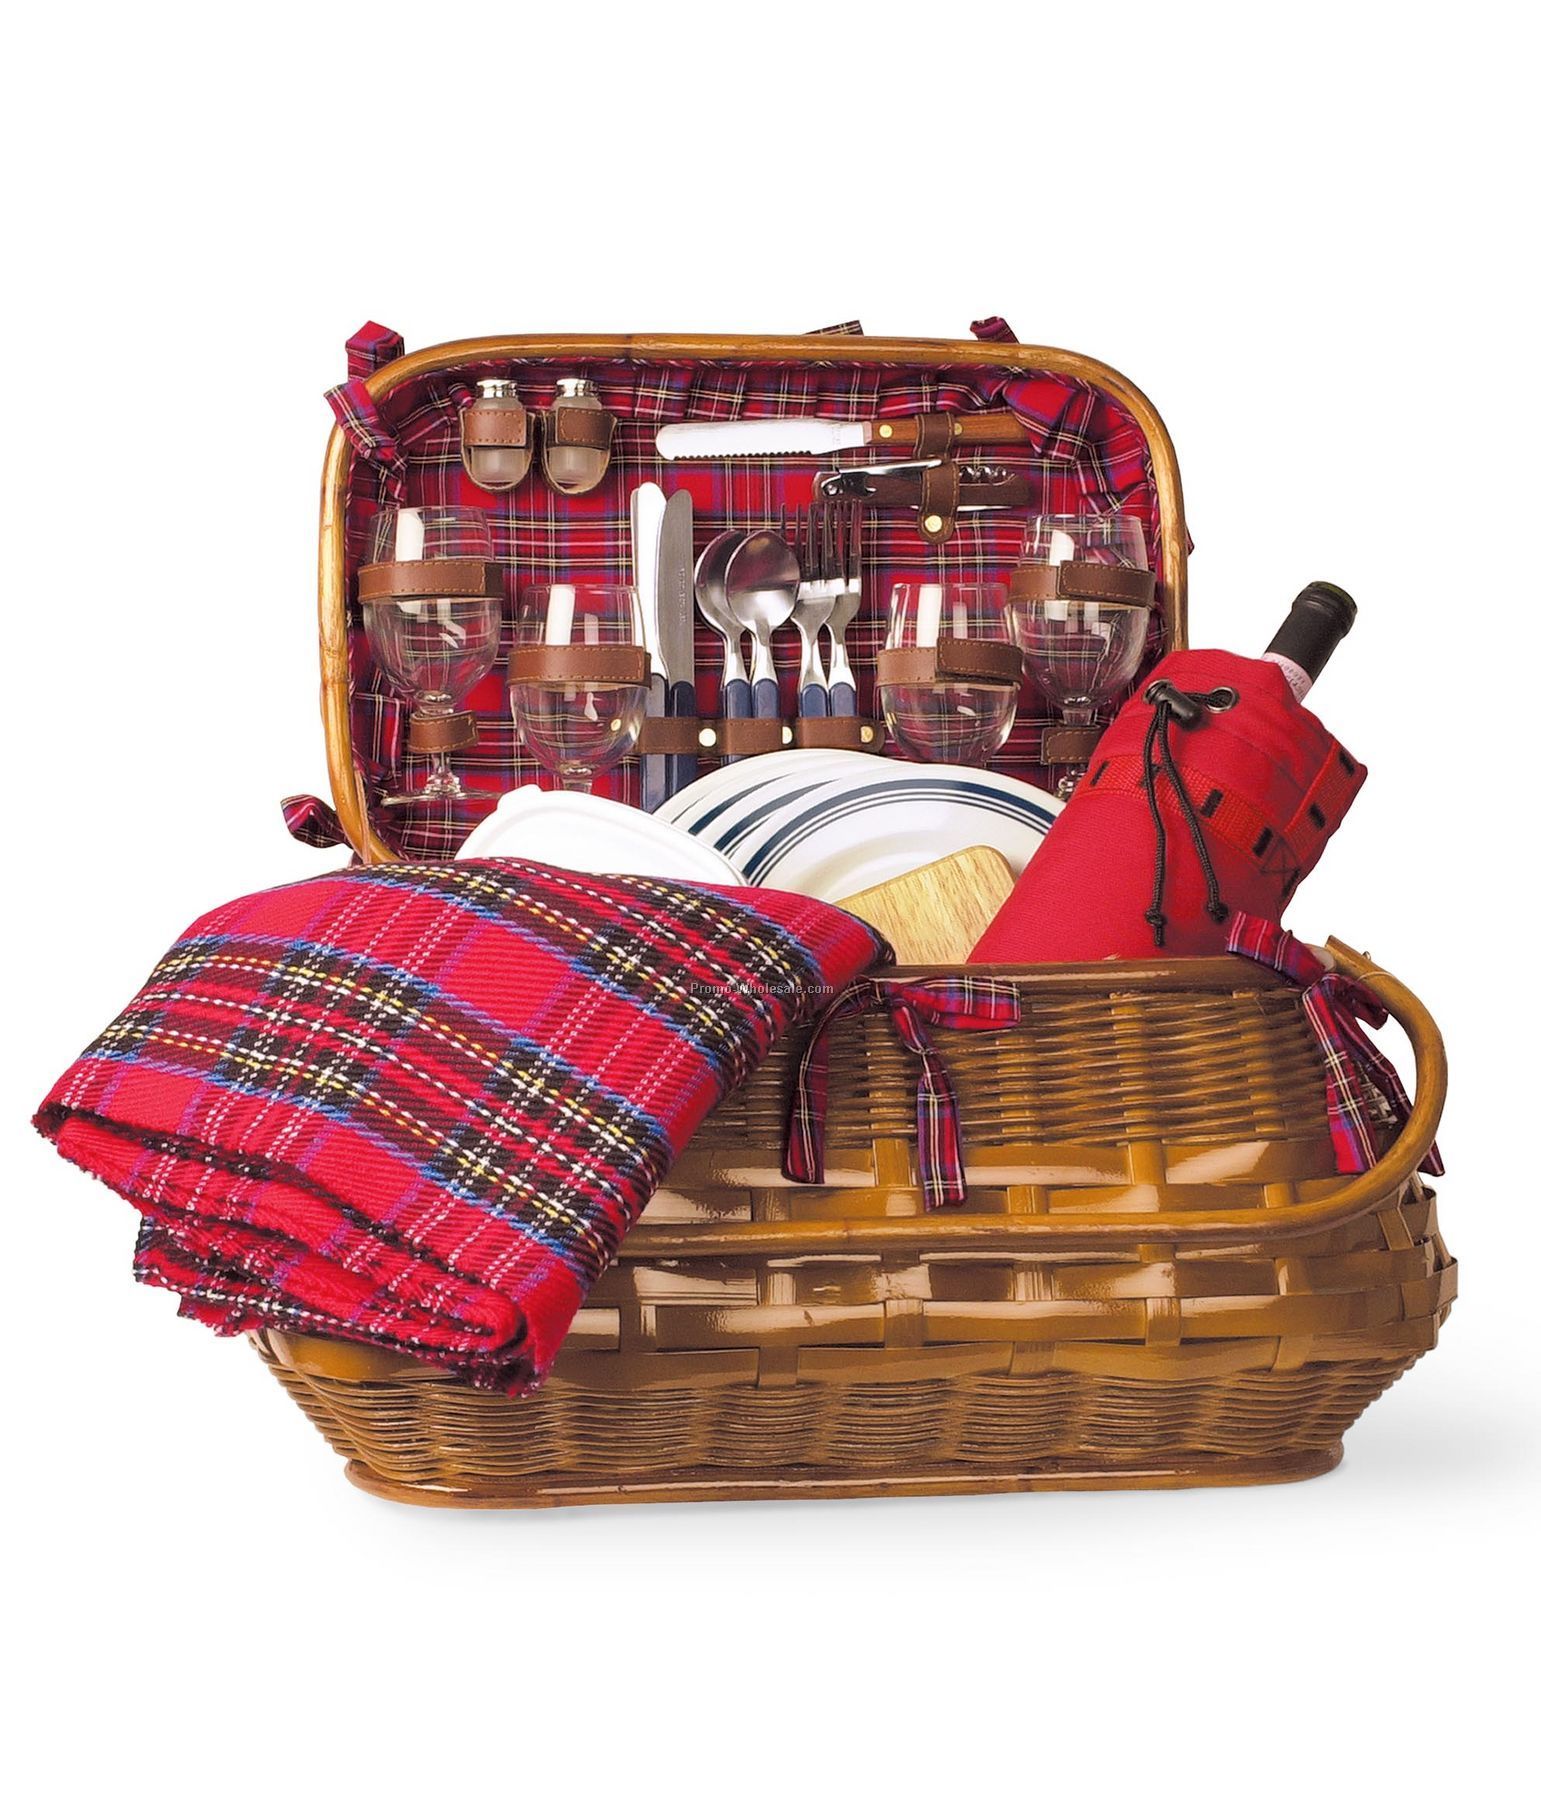 Highlander Bombay Picnic Basket With Service For 4